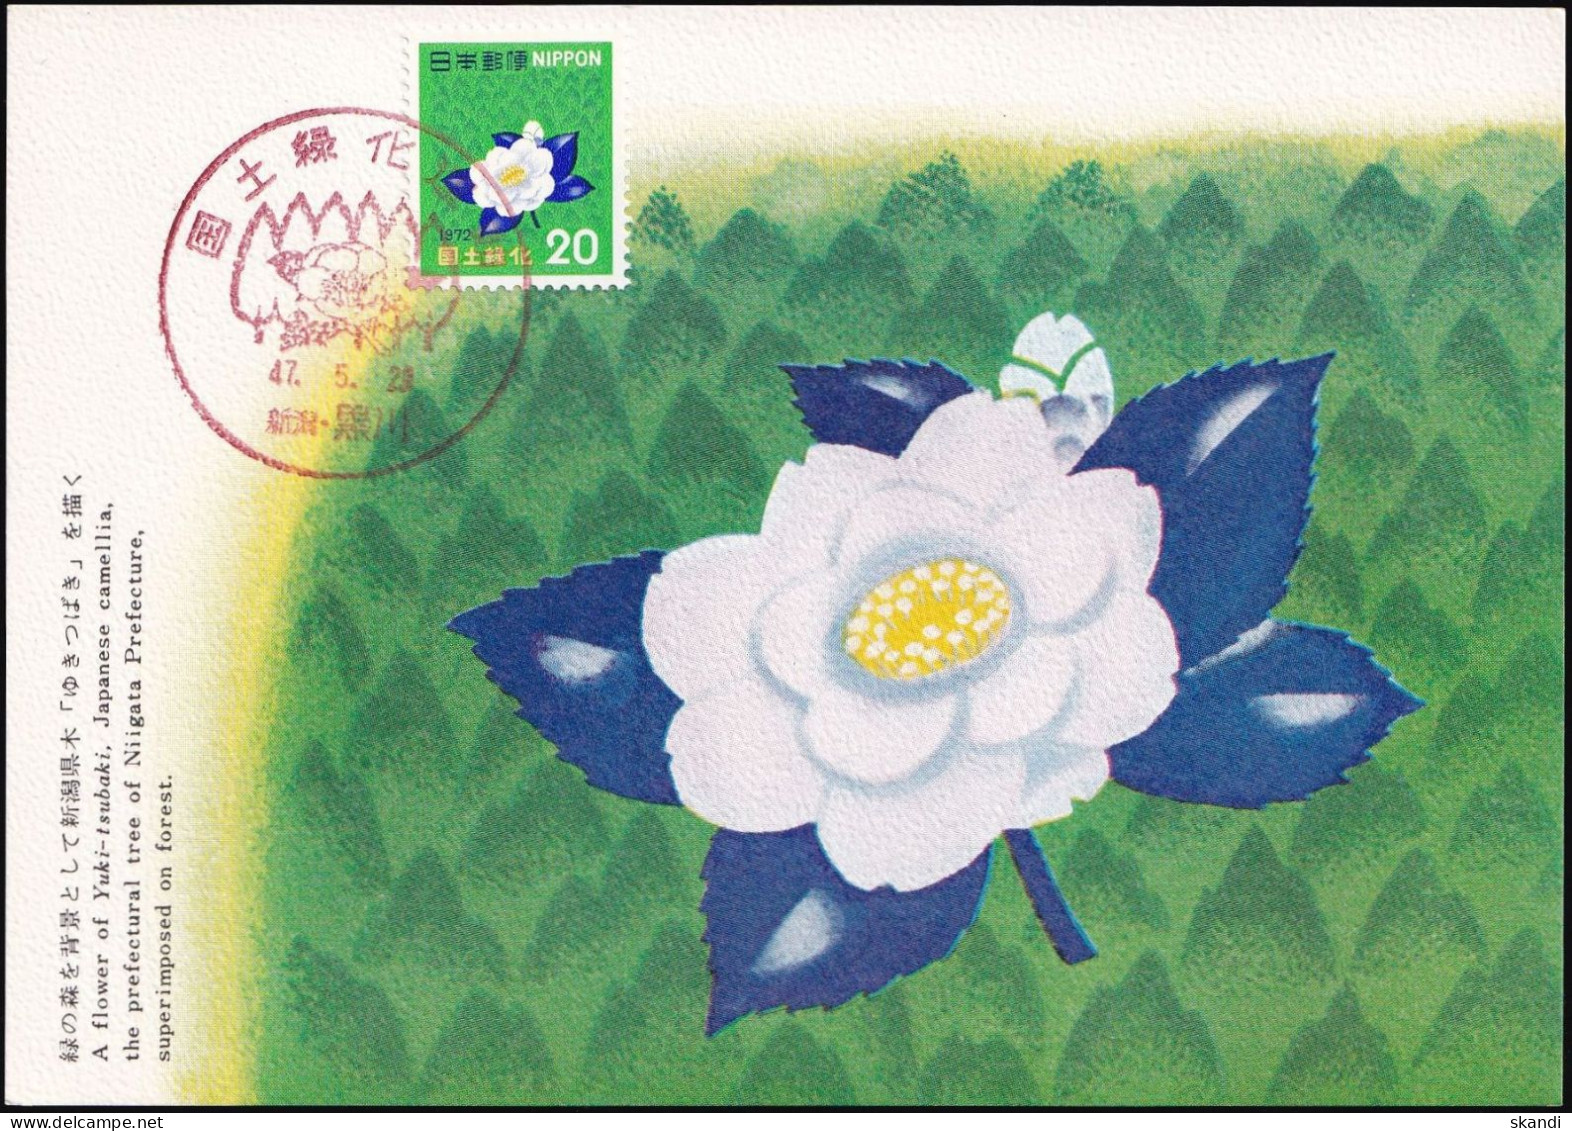 JAPAN 1972 Mi-Nr. 1151 Maximumkarte MK/MC No. 202 - Cartes-maximum